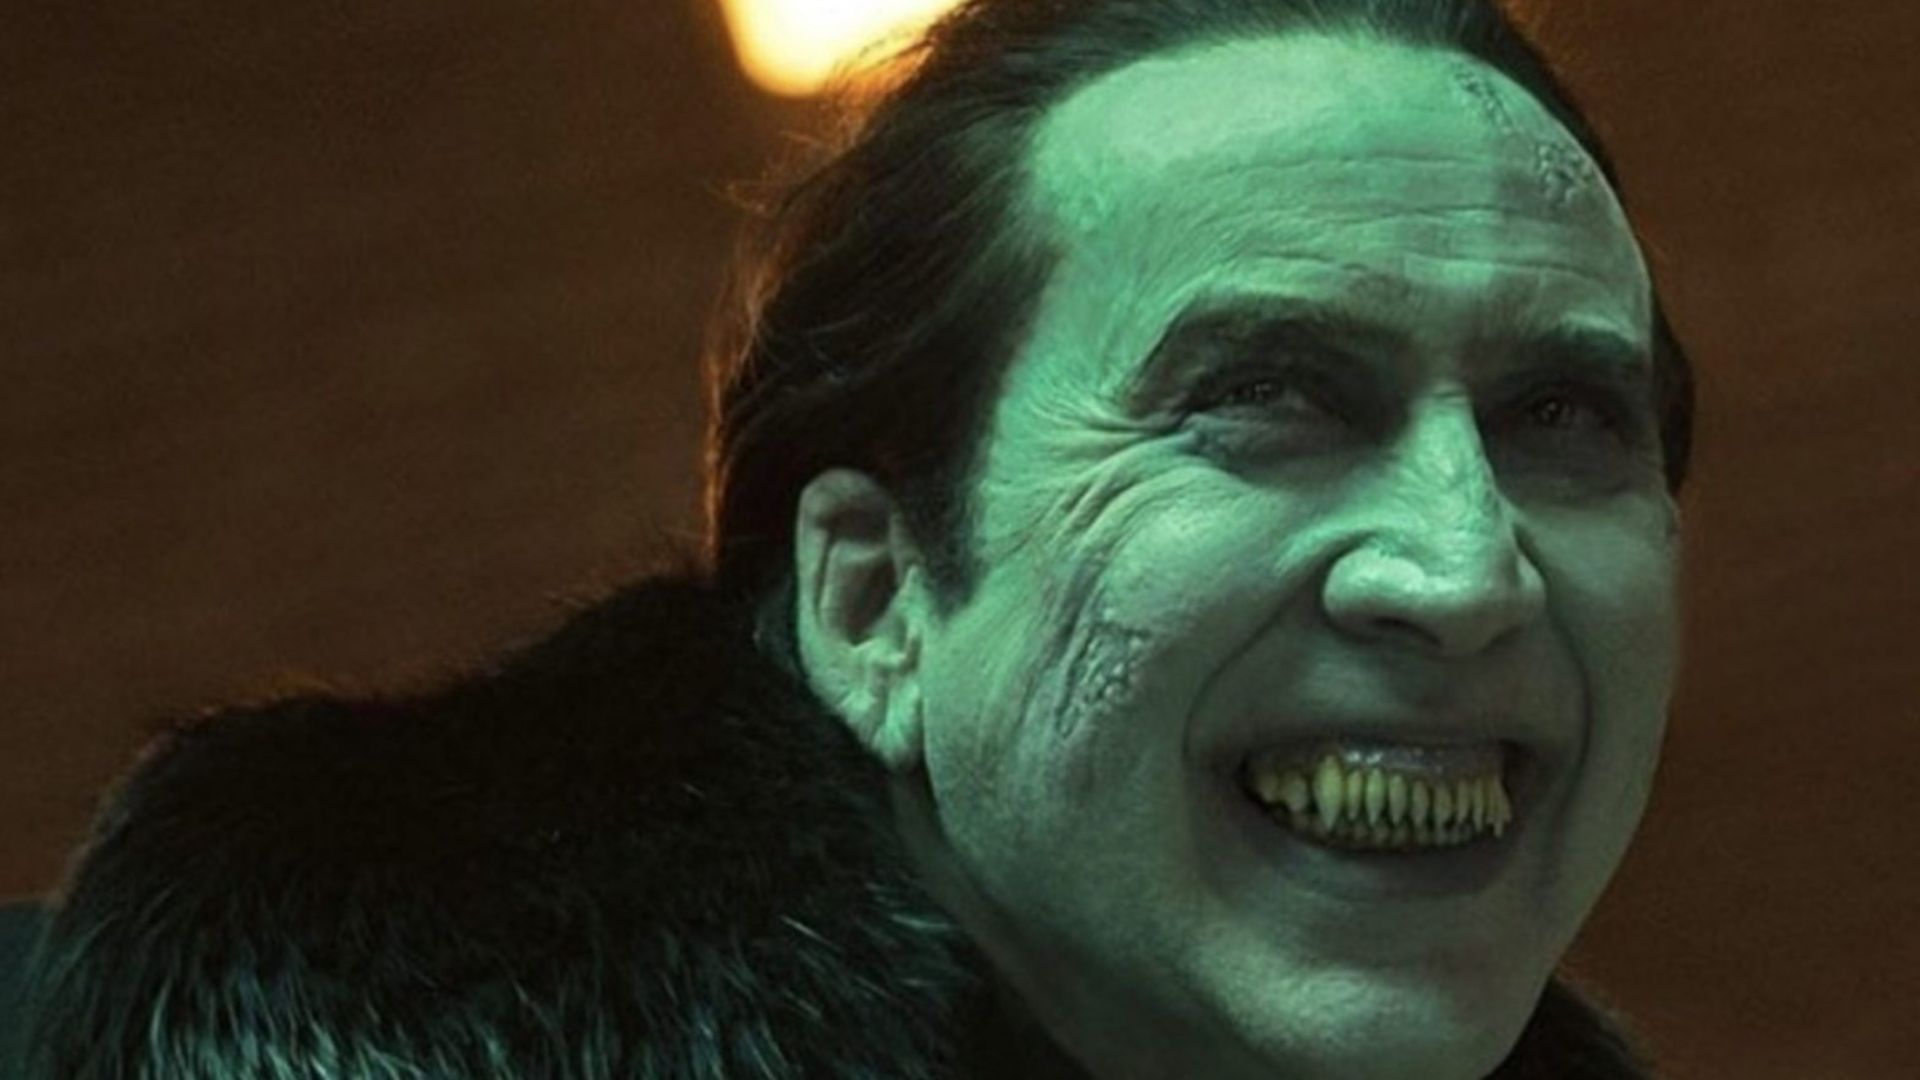 Nicolas cage sonriendo como Dracula en la nueva pelicula renfield